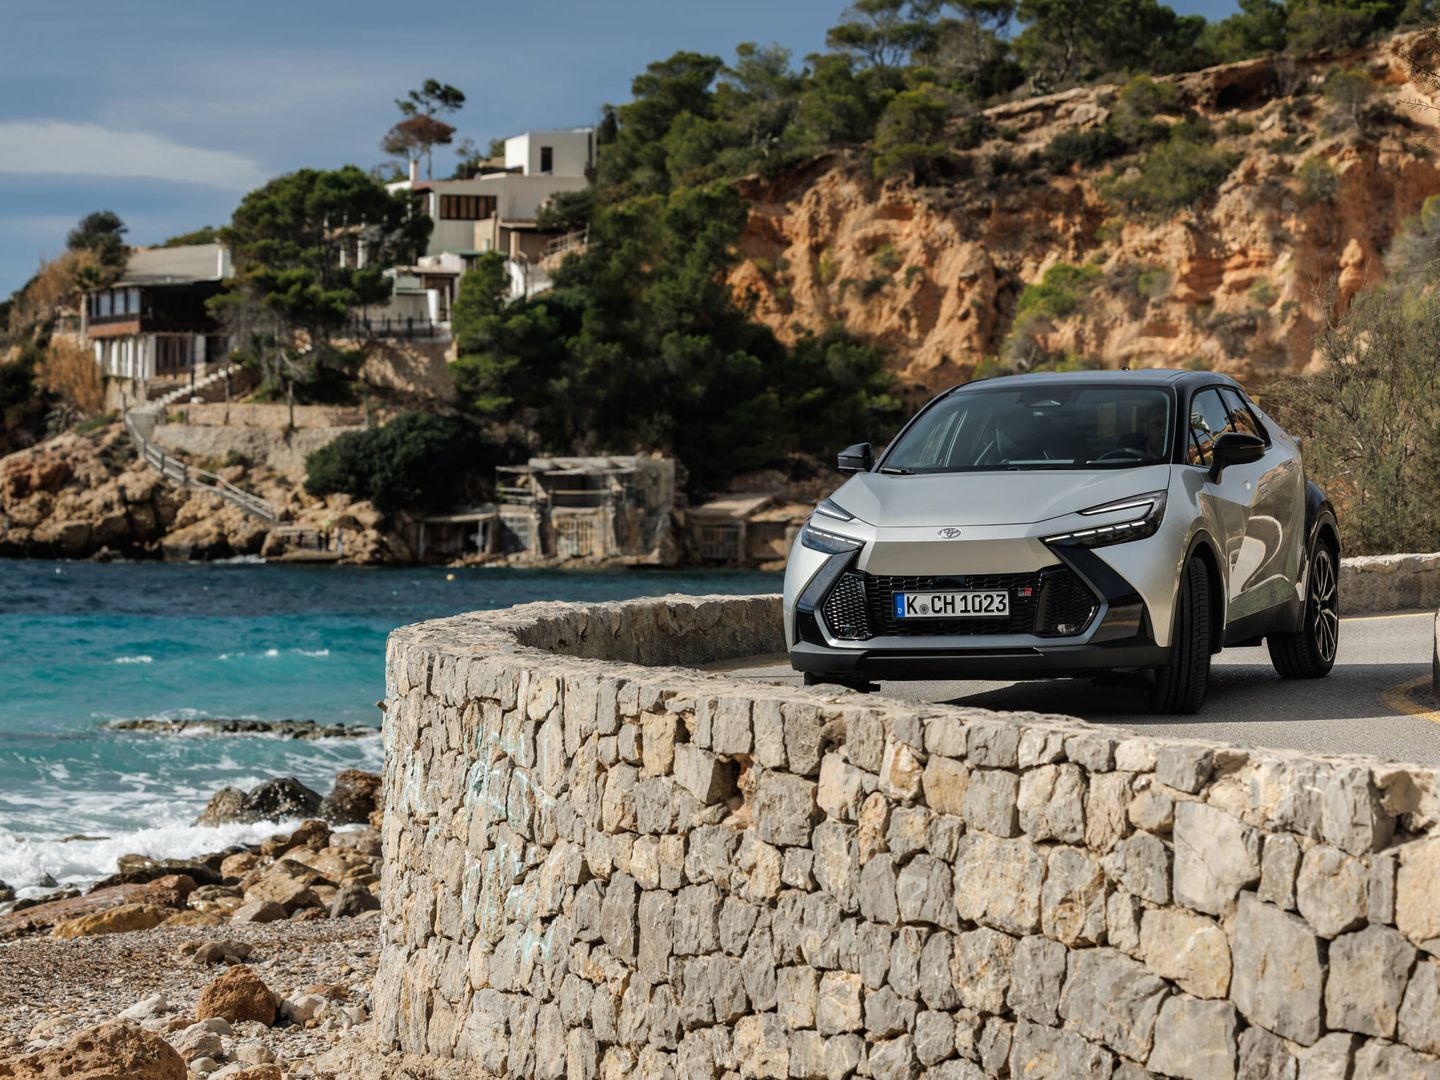 Toyota ha elegido Ibiza para la presentación europea de su nuevo modelo, fabricado en Turquía.